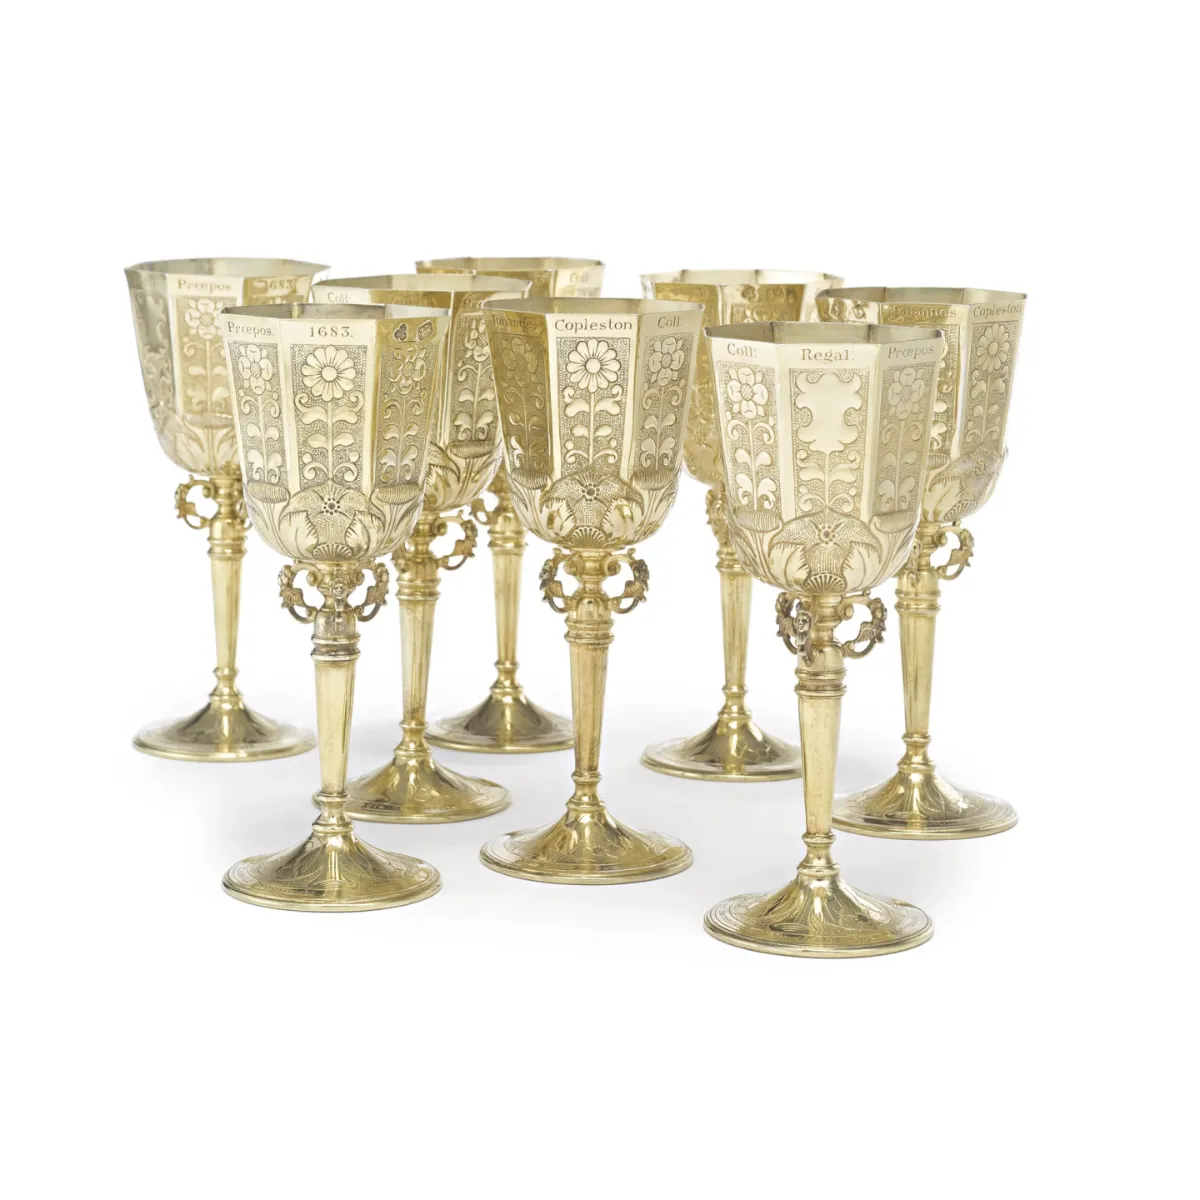 प्राचीन डिजाइन सोने का रंग वाइन, गोब्लेट ग्लास क्लासिक डिजाइन उच्च गुणवत्ता वाले गोलेट ग्लास क्लासिक डिजाइन उच्च गुणवत्ता वाले गोब्लेट